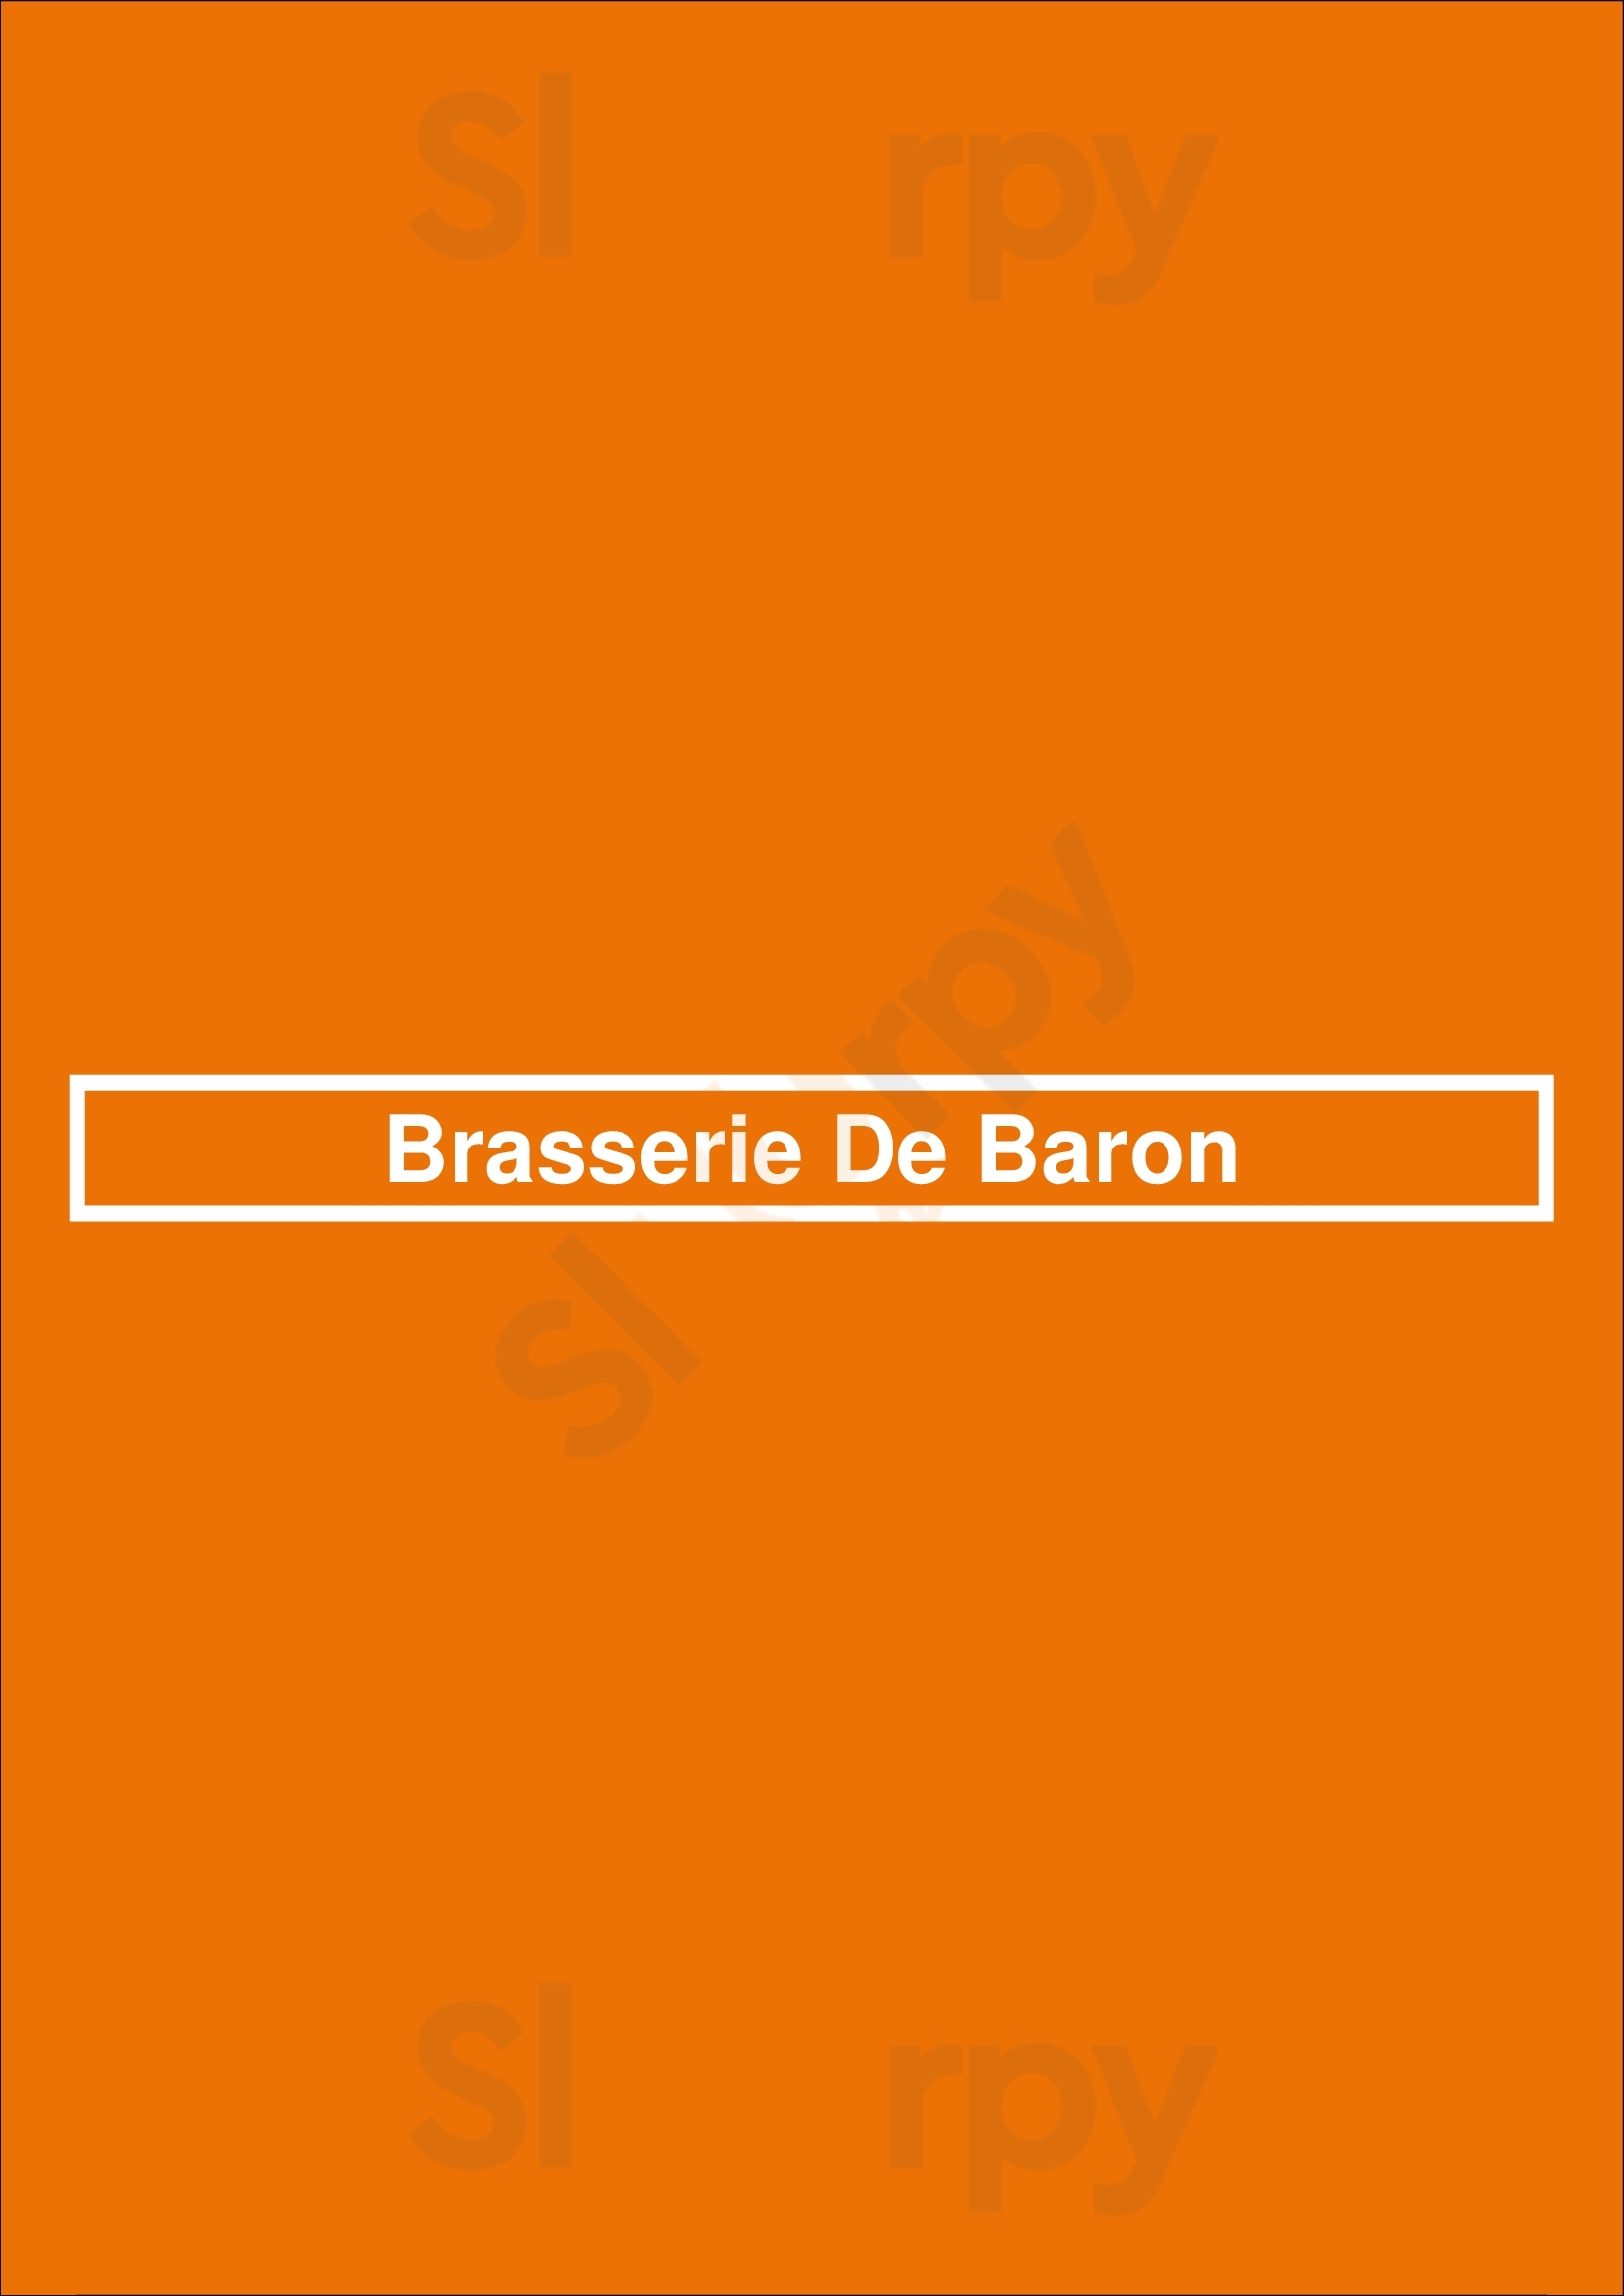 Brasserie De Baron Uden Menu - 1